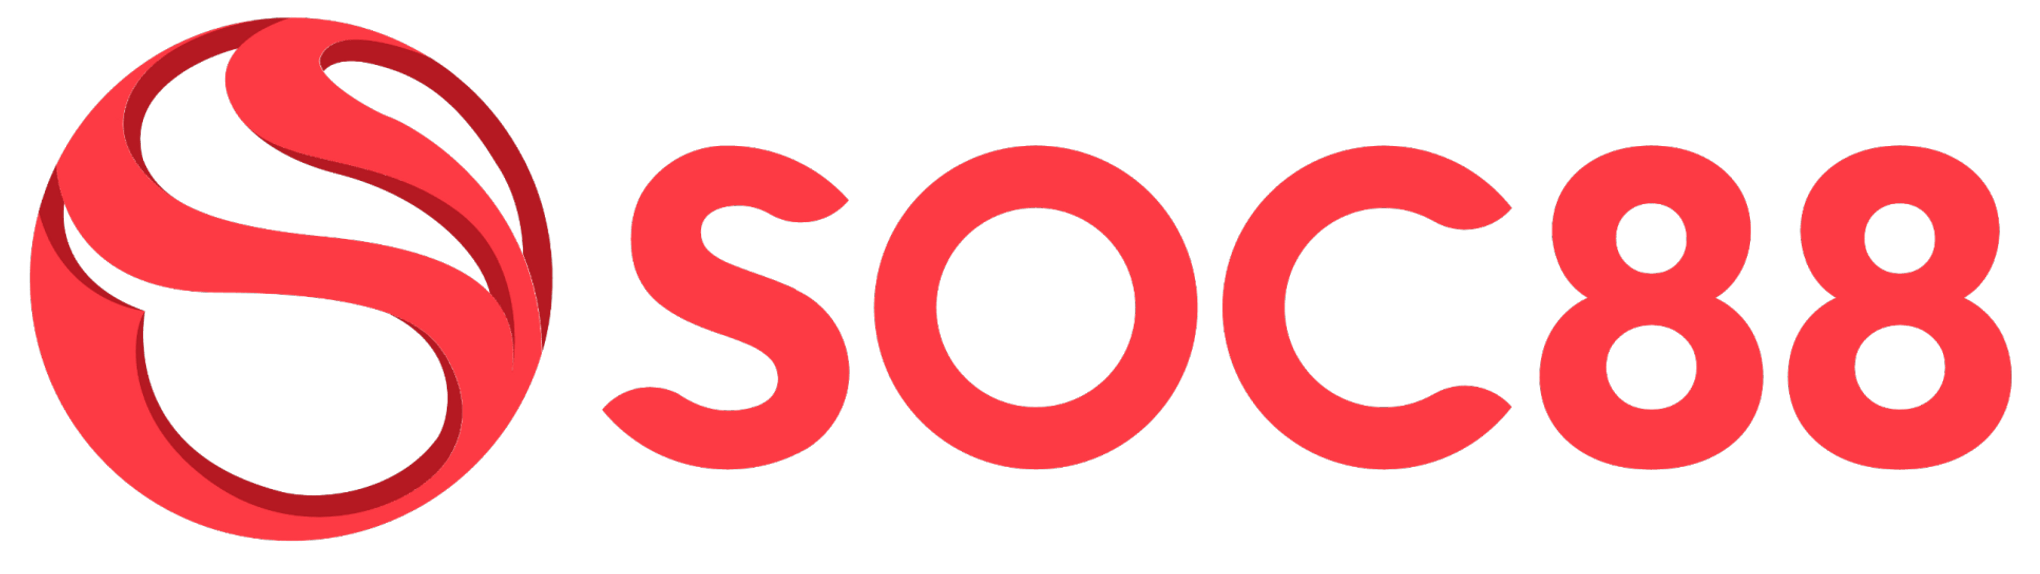 soc88 logo